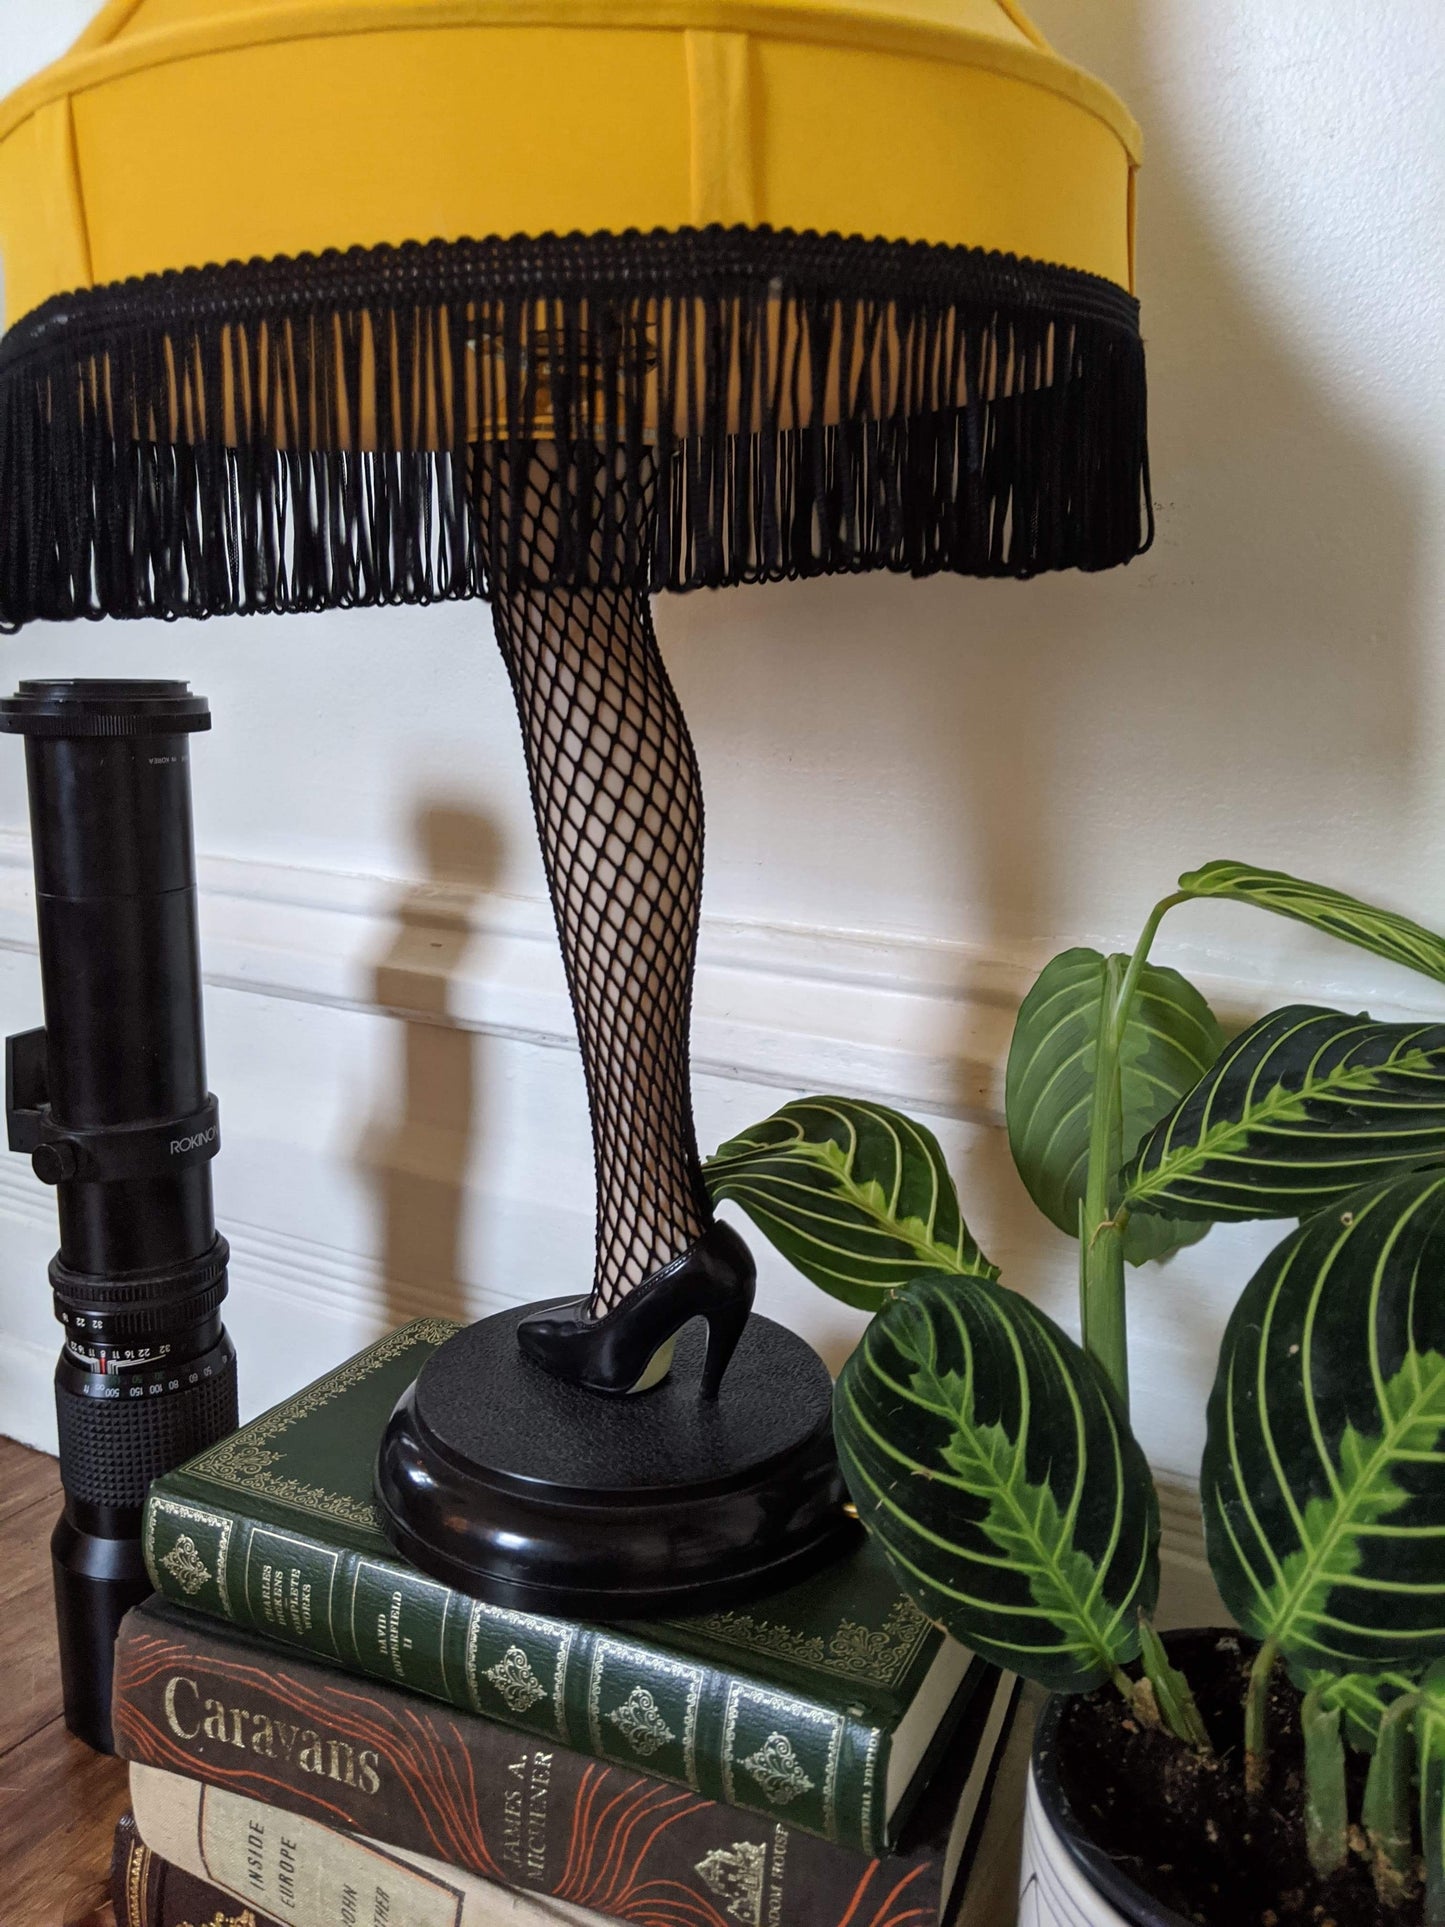 The Lovely Leg Lamp